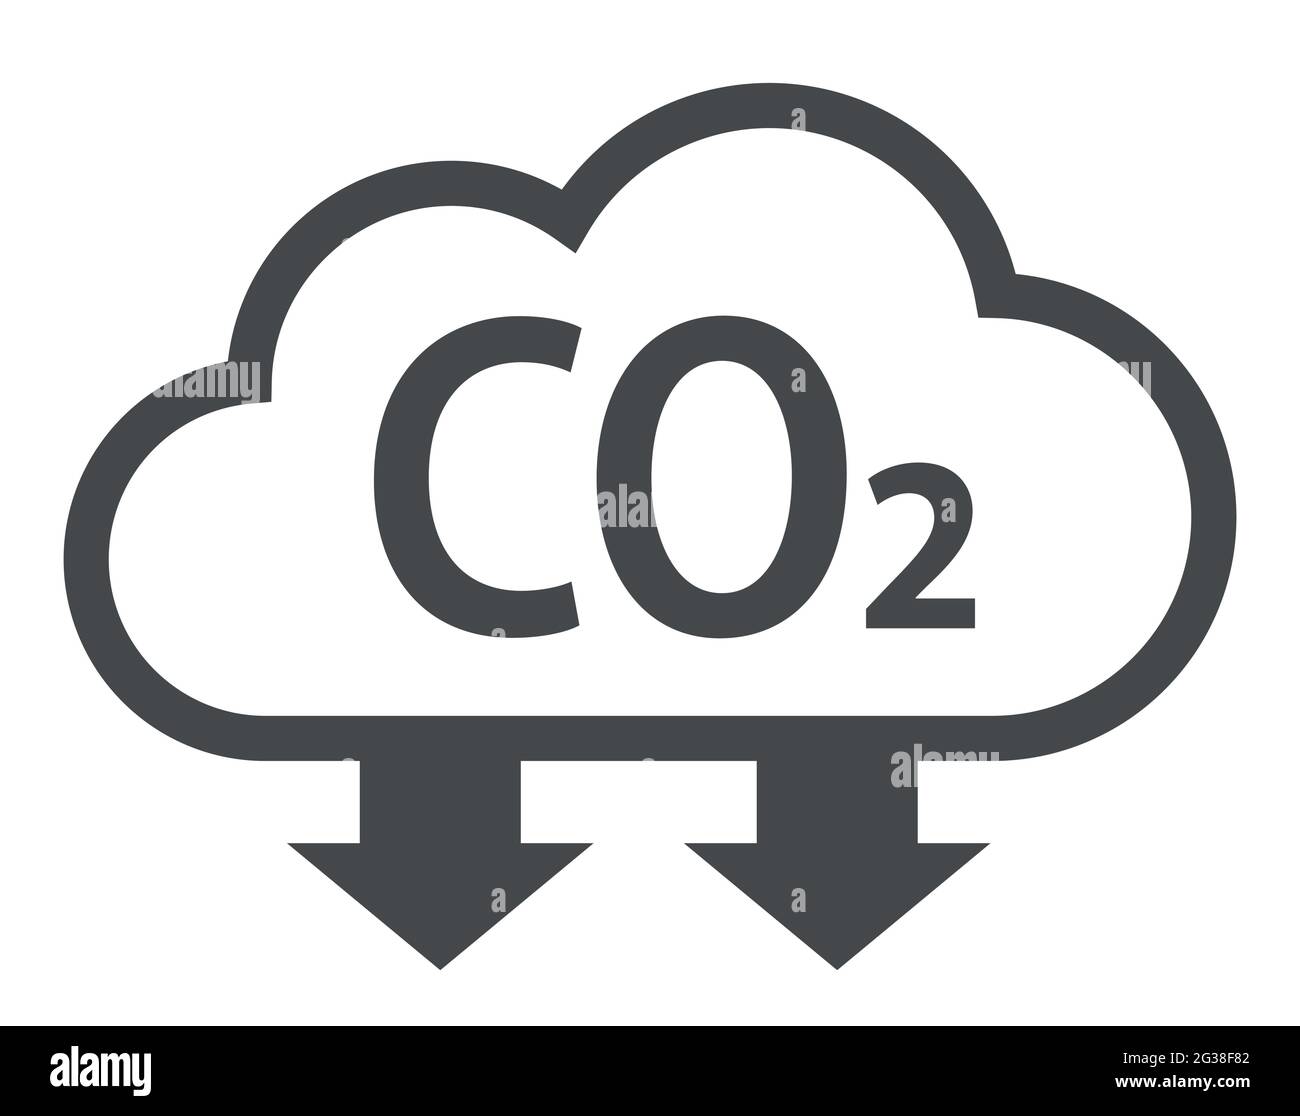 Simbolo della nuvola e della co2 con frecce verso il basso per l'icona del vettore di riduzione dei gas serra Illustrazione Vettoriale